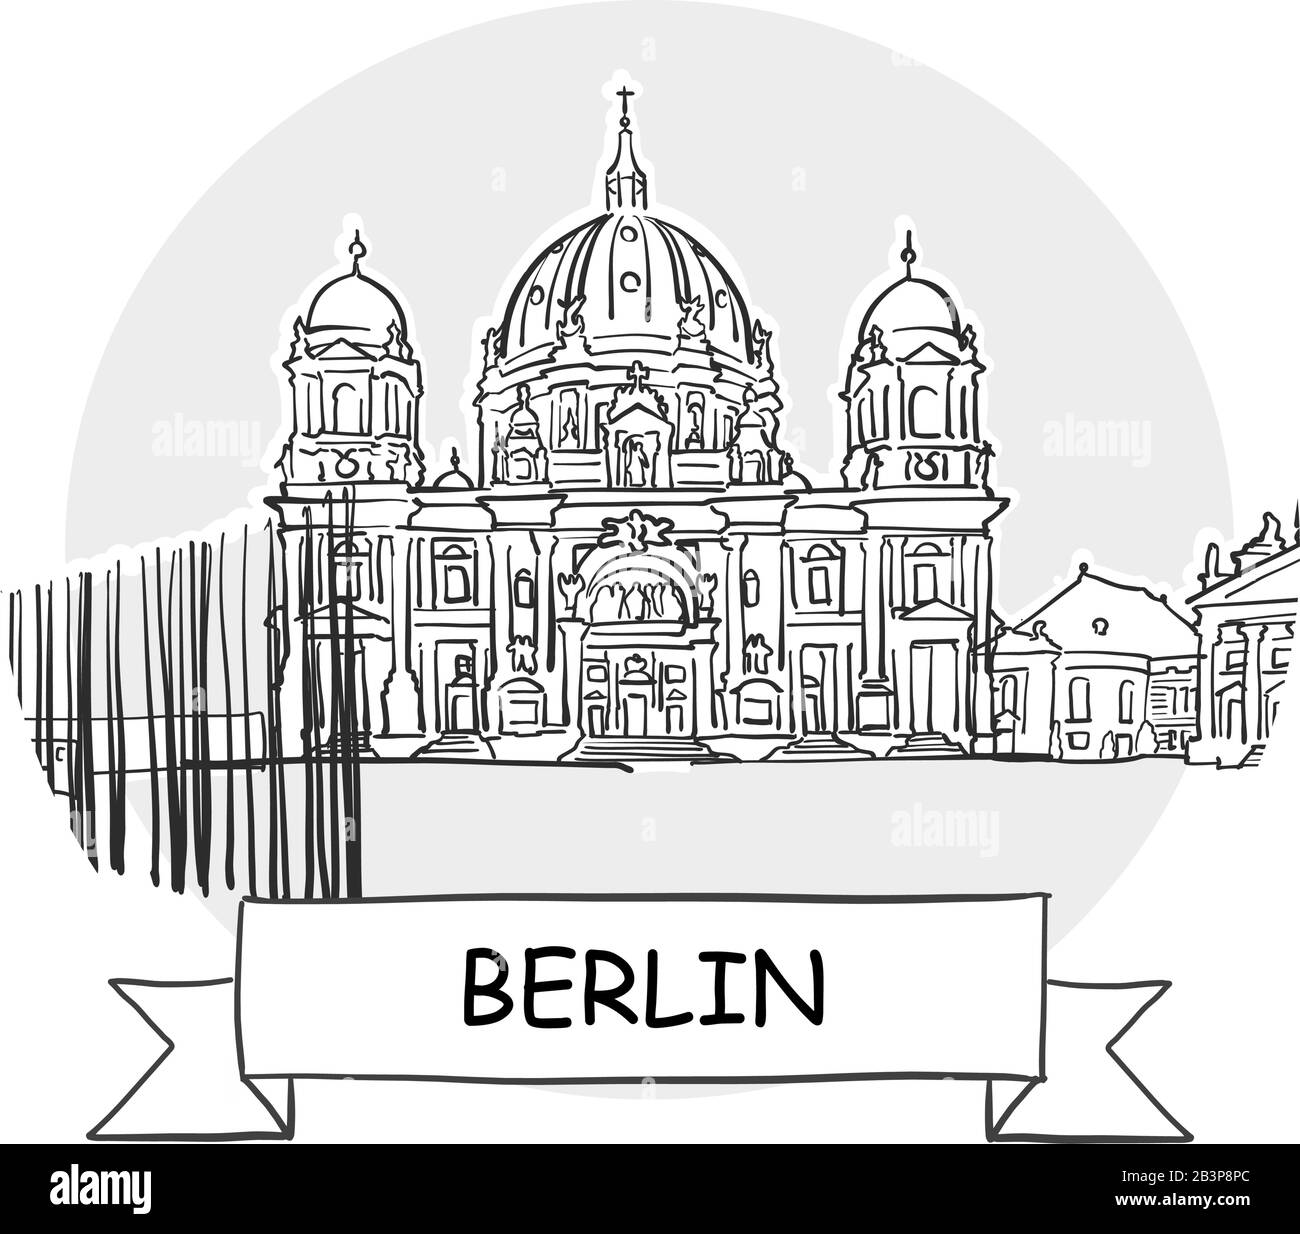 Panneau Vectoriel Berlin Cityscape. Illustration d'un dessin au trait avec ruban et titre. Illustration de Vecteur